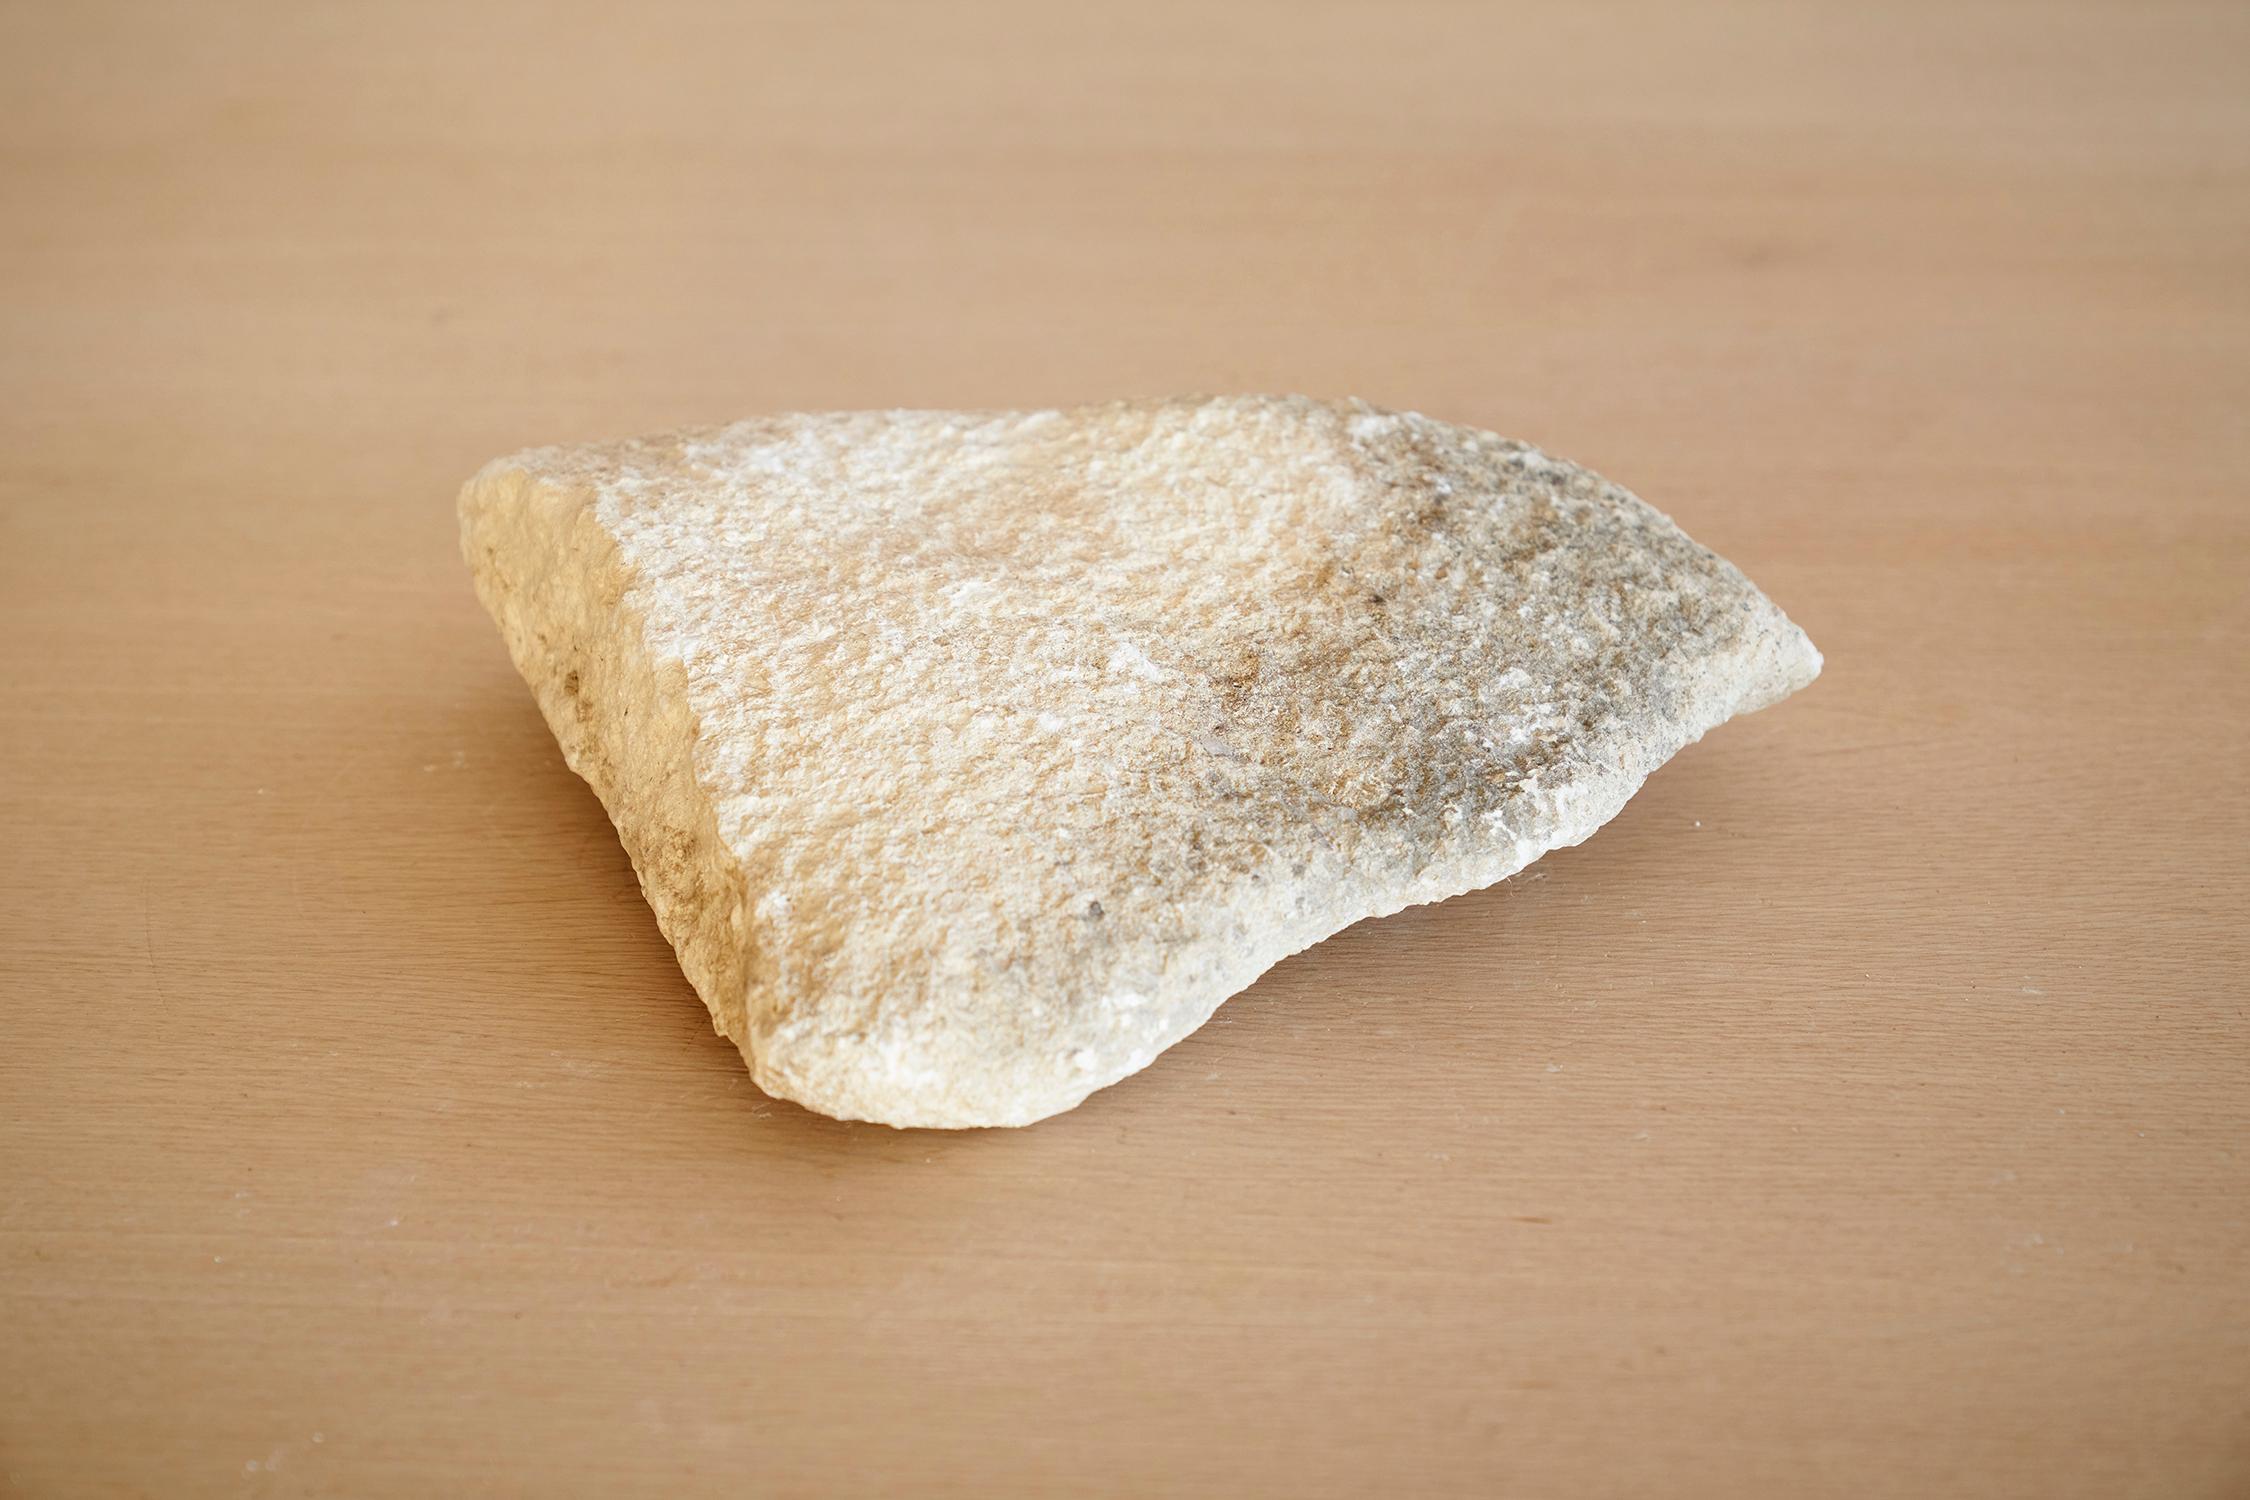 Einzigartige handgeschnitzte Steinskulptur von Jean-Baptiste Van den Heede
Einzigartiges Stück
Abmessungen: D 28 x B 24 x H 6 cm
MATERIAL: Stein.

Handgeschnitzter Stein, 15 Jahre lang in der Natur gereift.
Eine Serie von Skulpturen, die 2007 mit